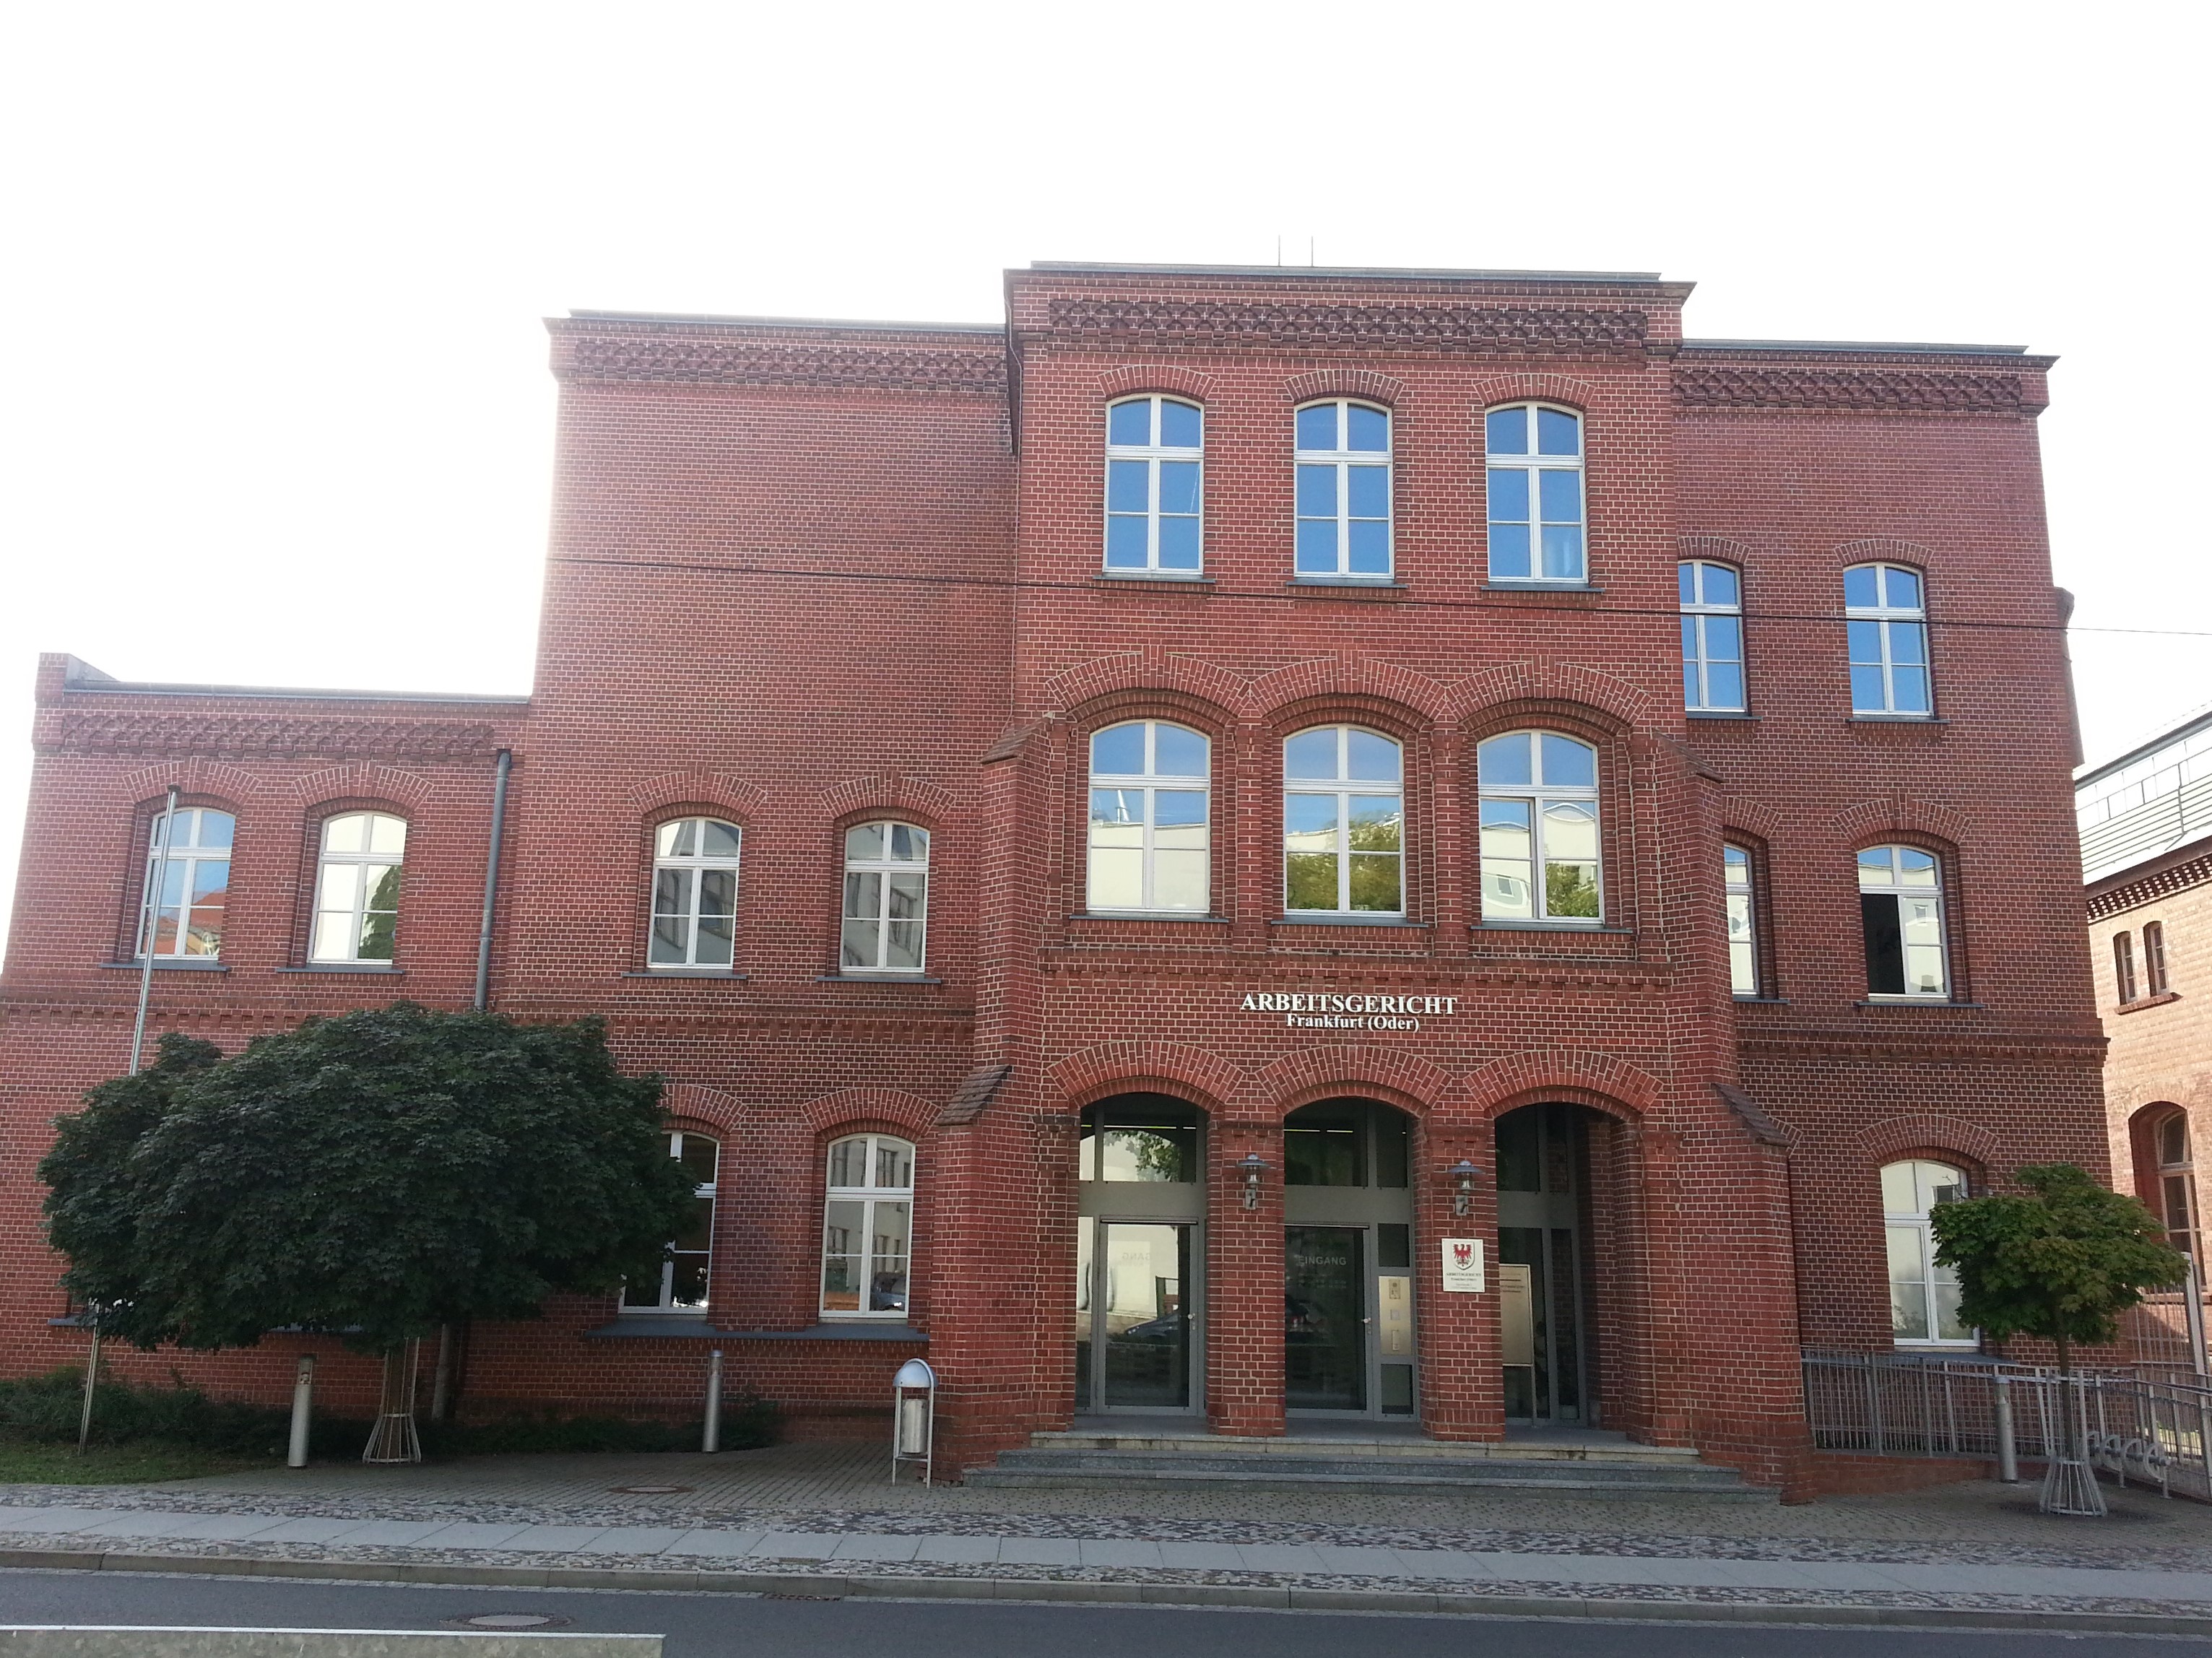 Bild: Frontansicht mit Eingang zum Arbeitsgericht Frankfurt Oder